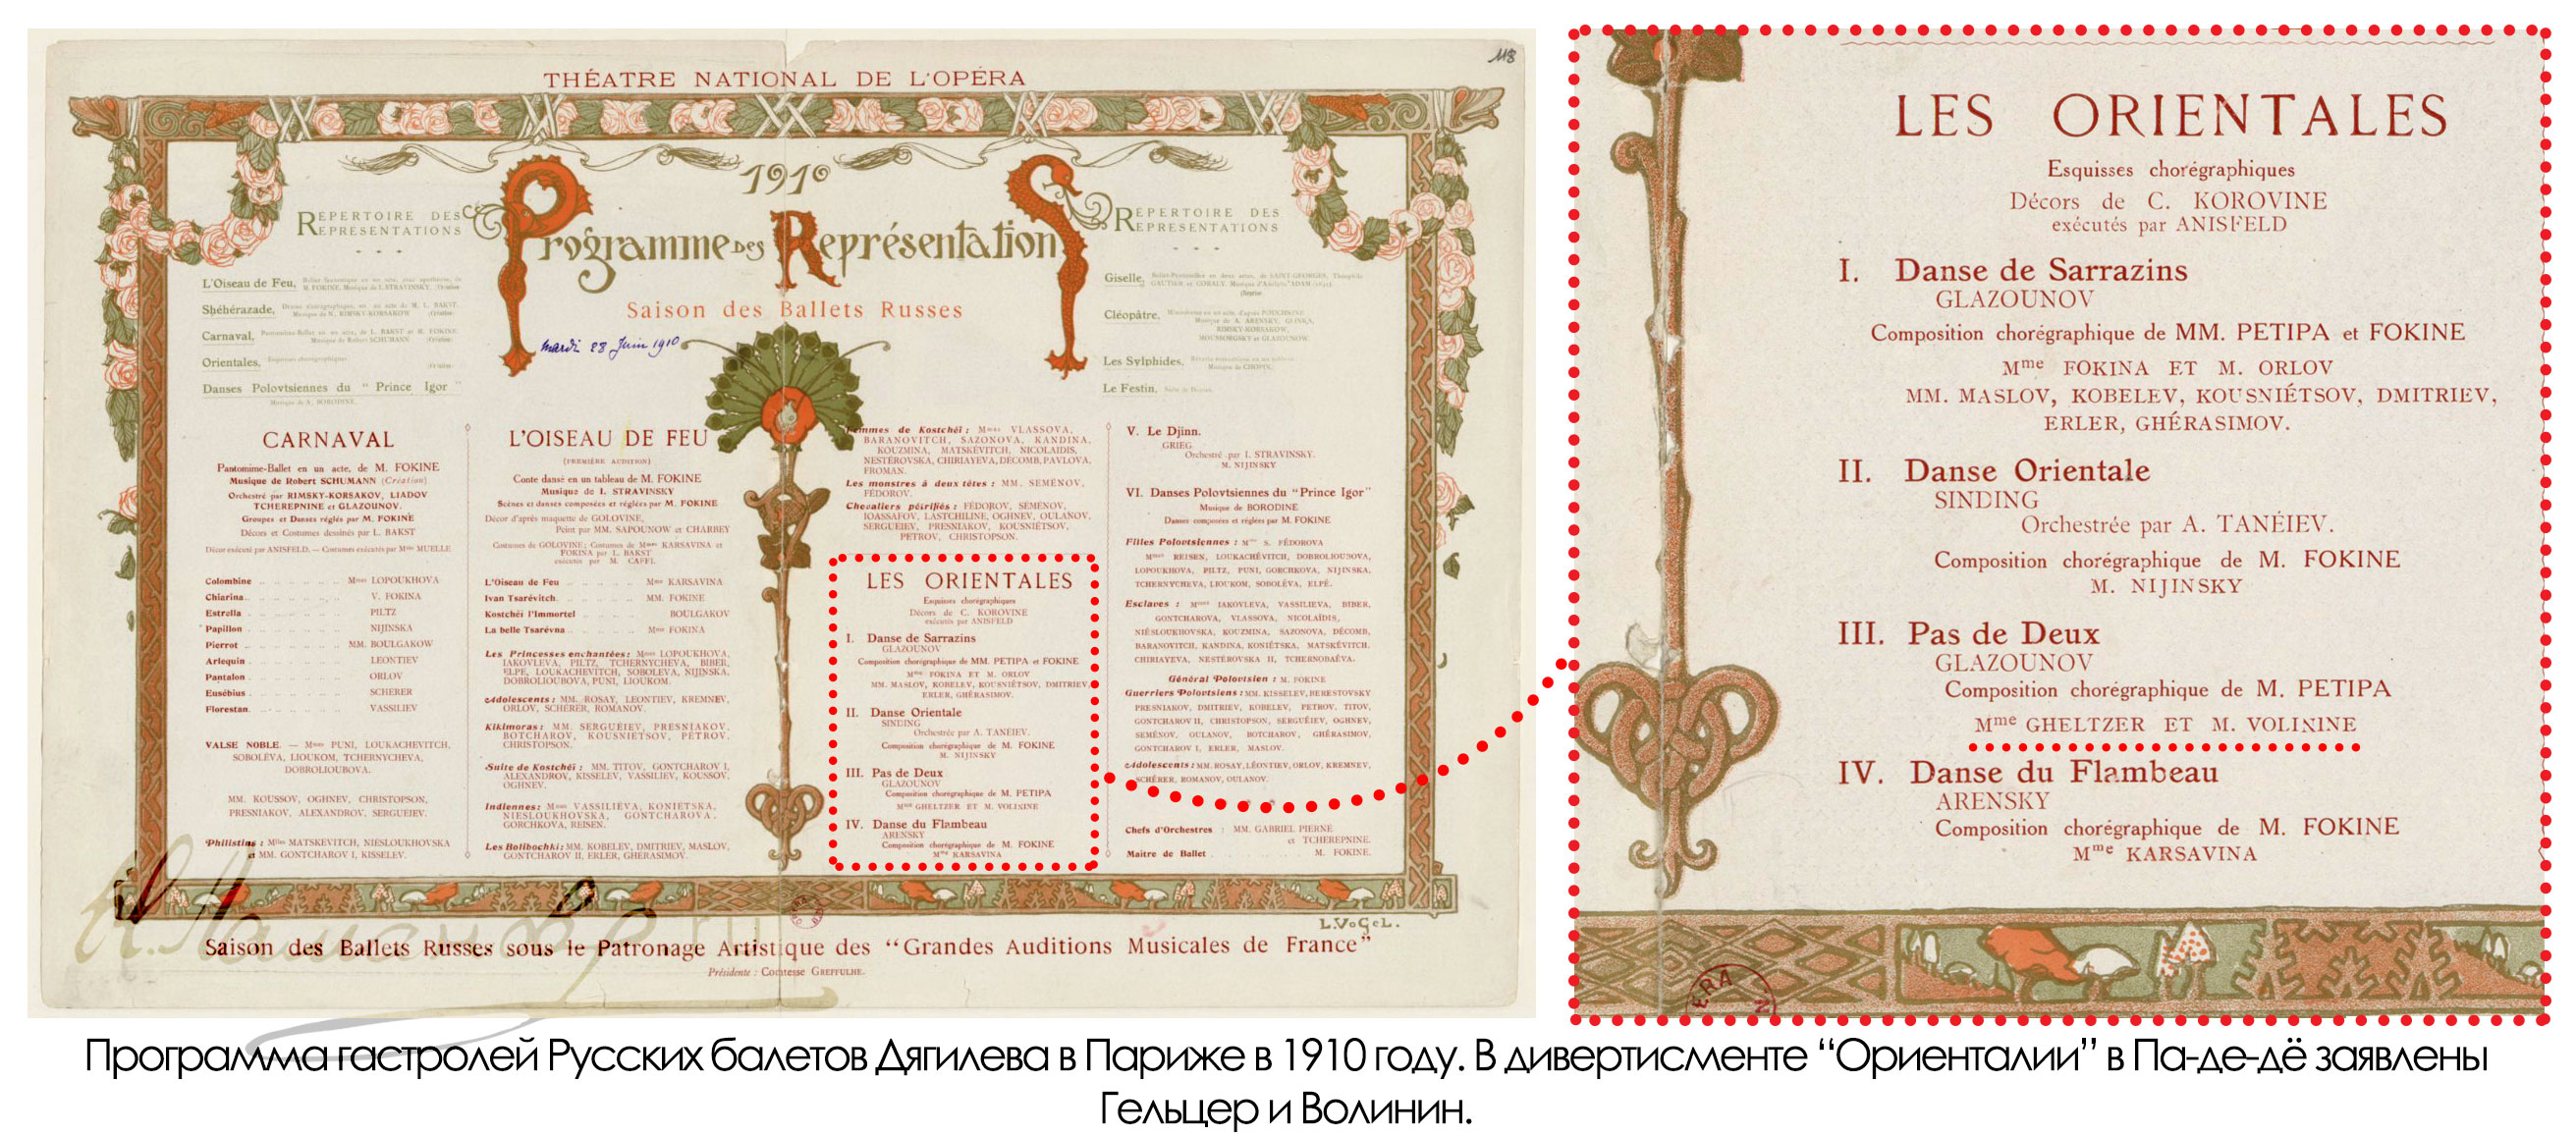 Программа гастролей Русских балетом Дягилева в 1910 году